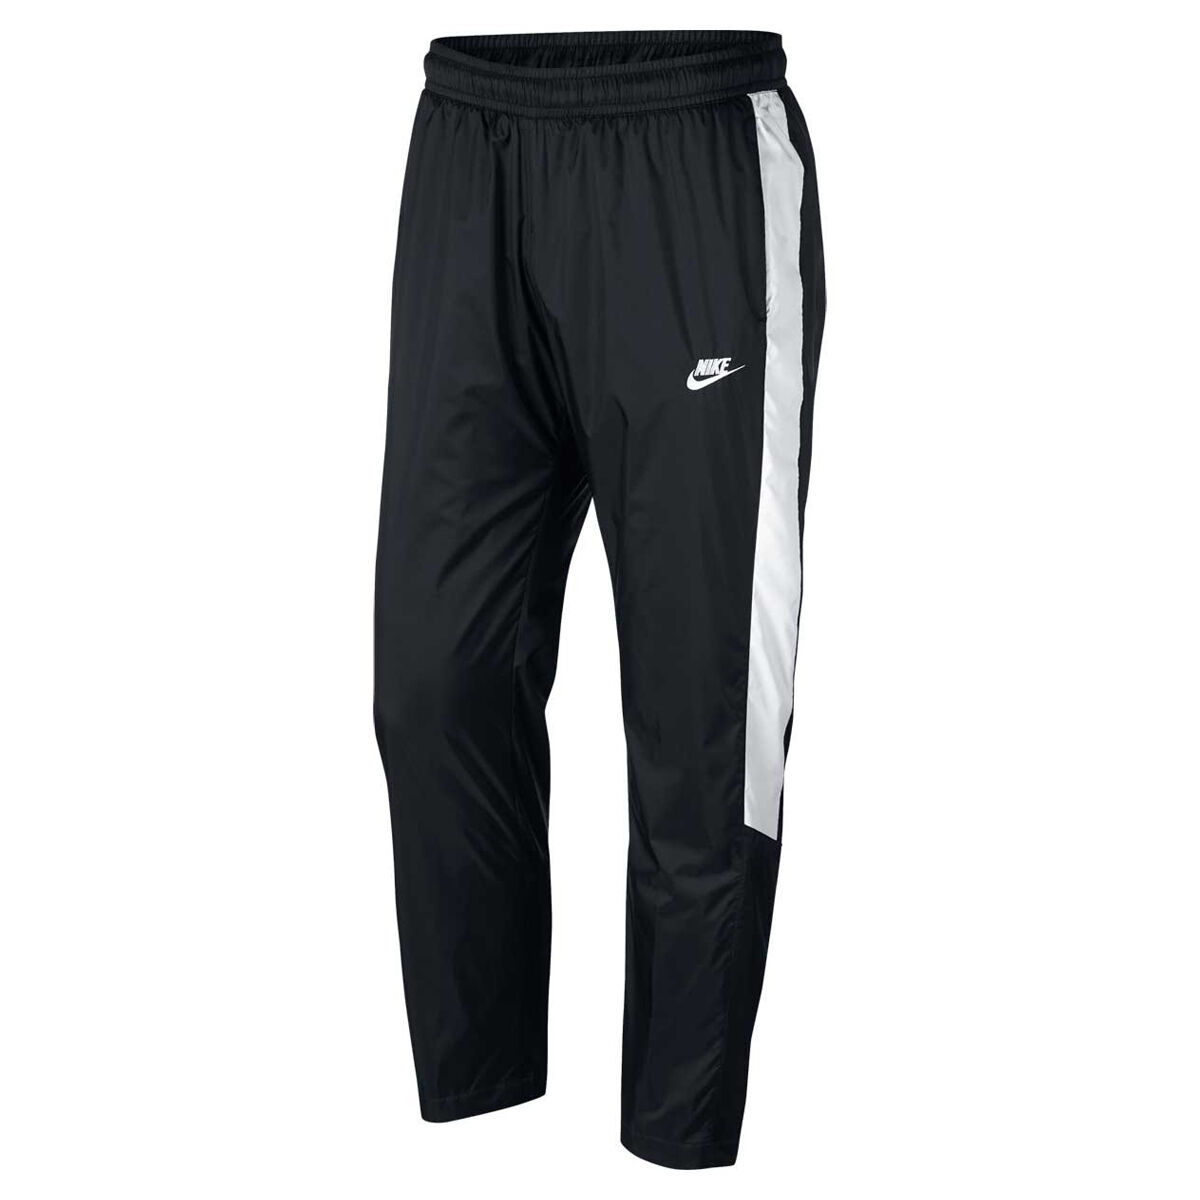 Nike Mens Woven Core Track Pants Black 